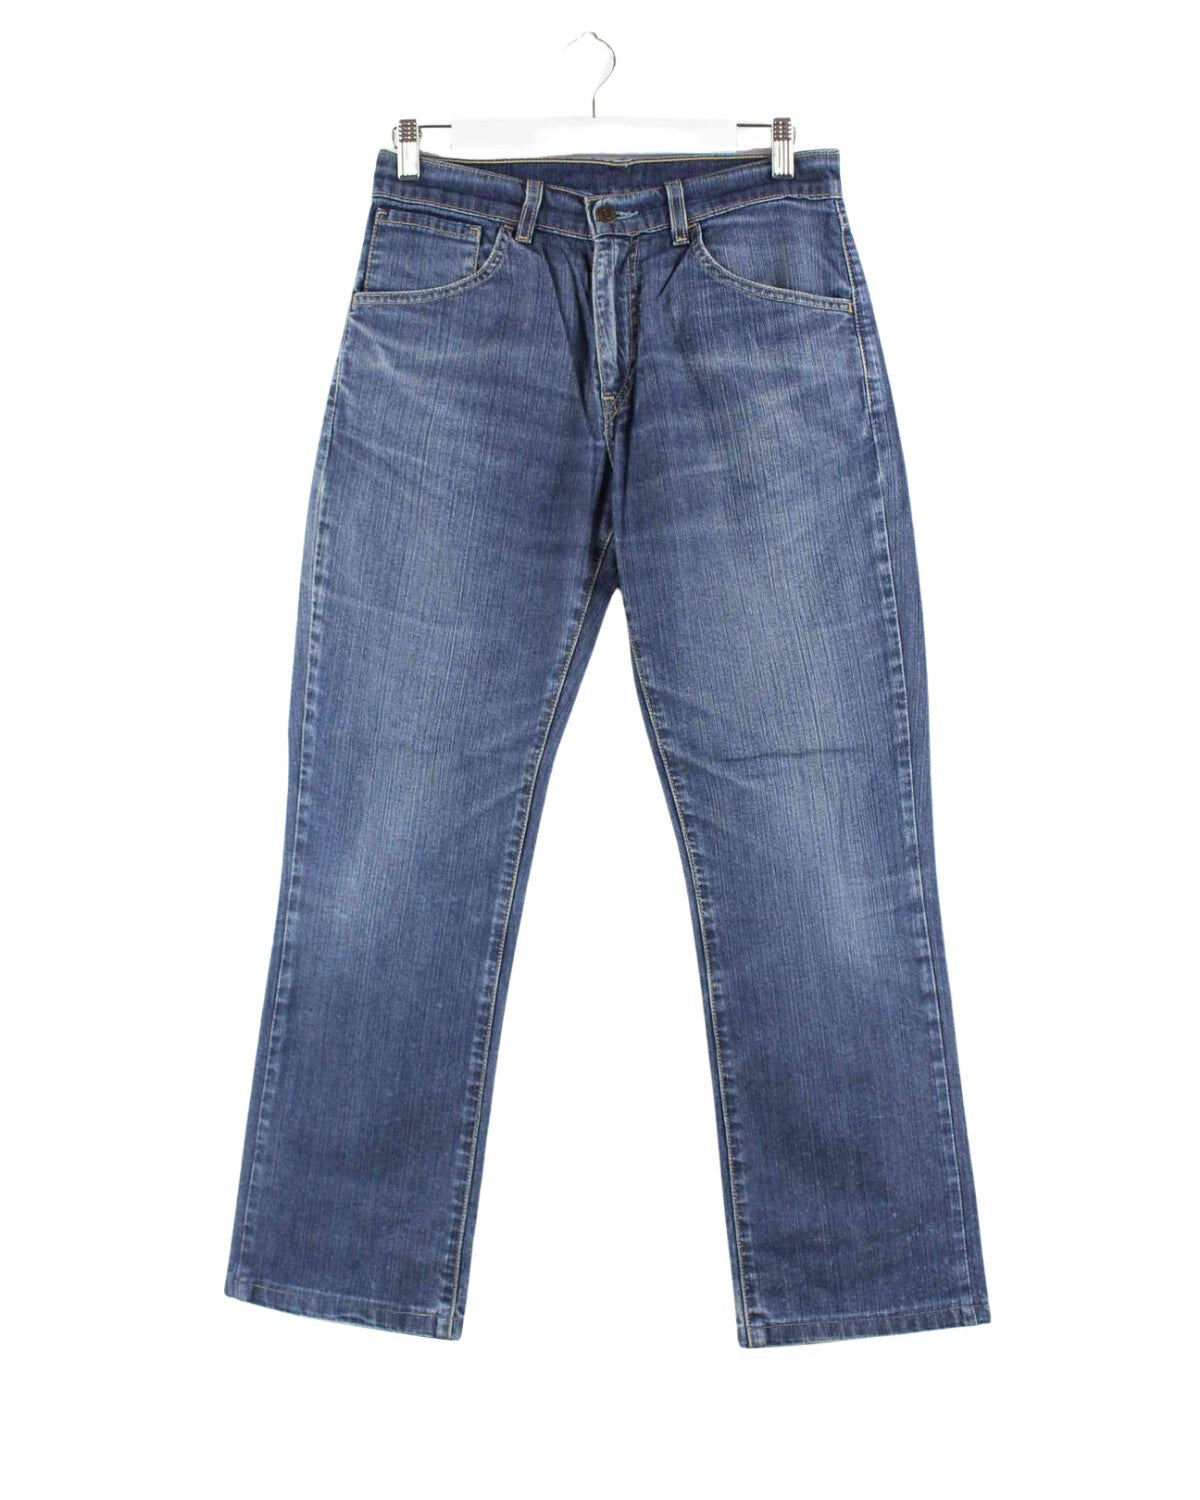 Levi's Damen Jeans Blau W26 L28 (front image)